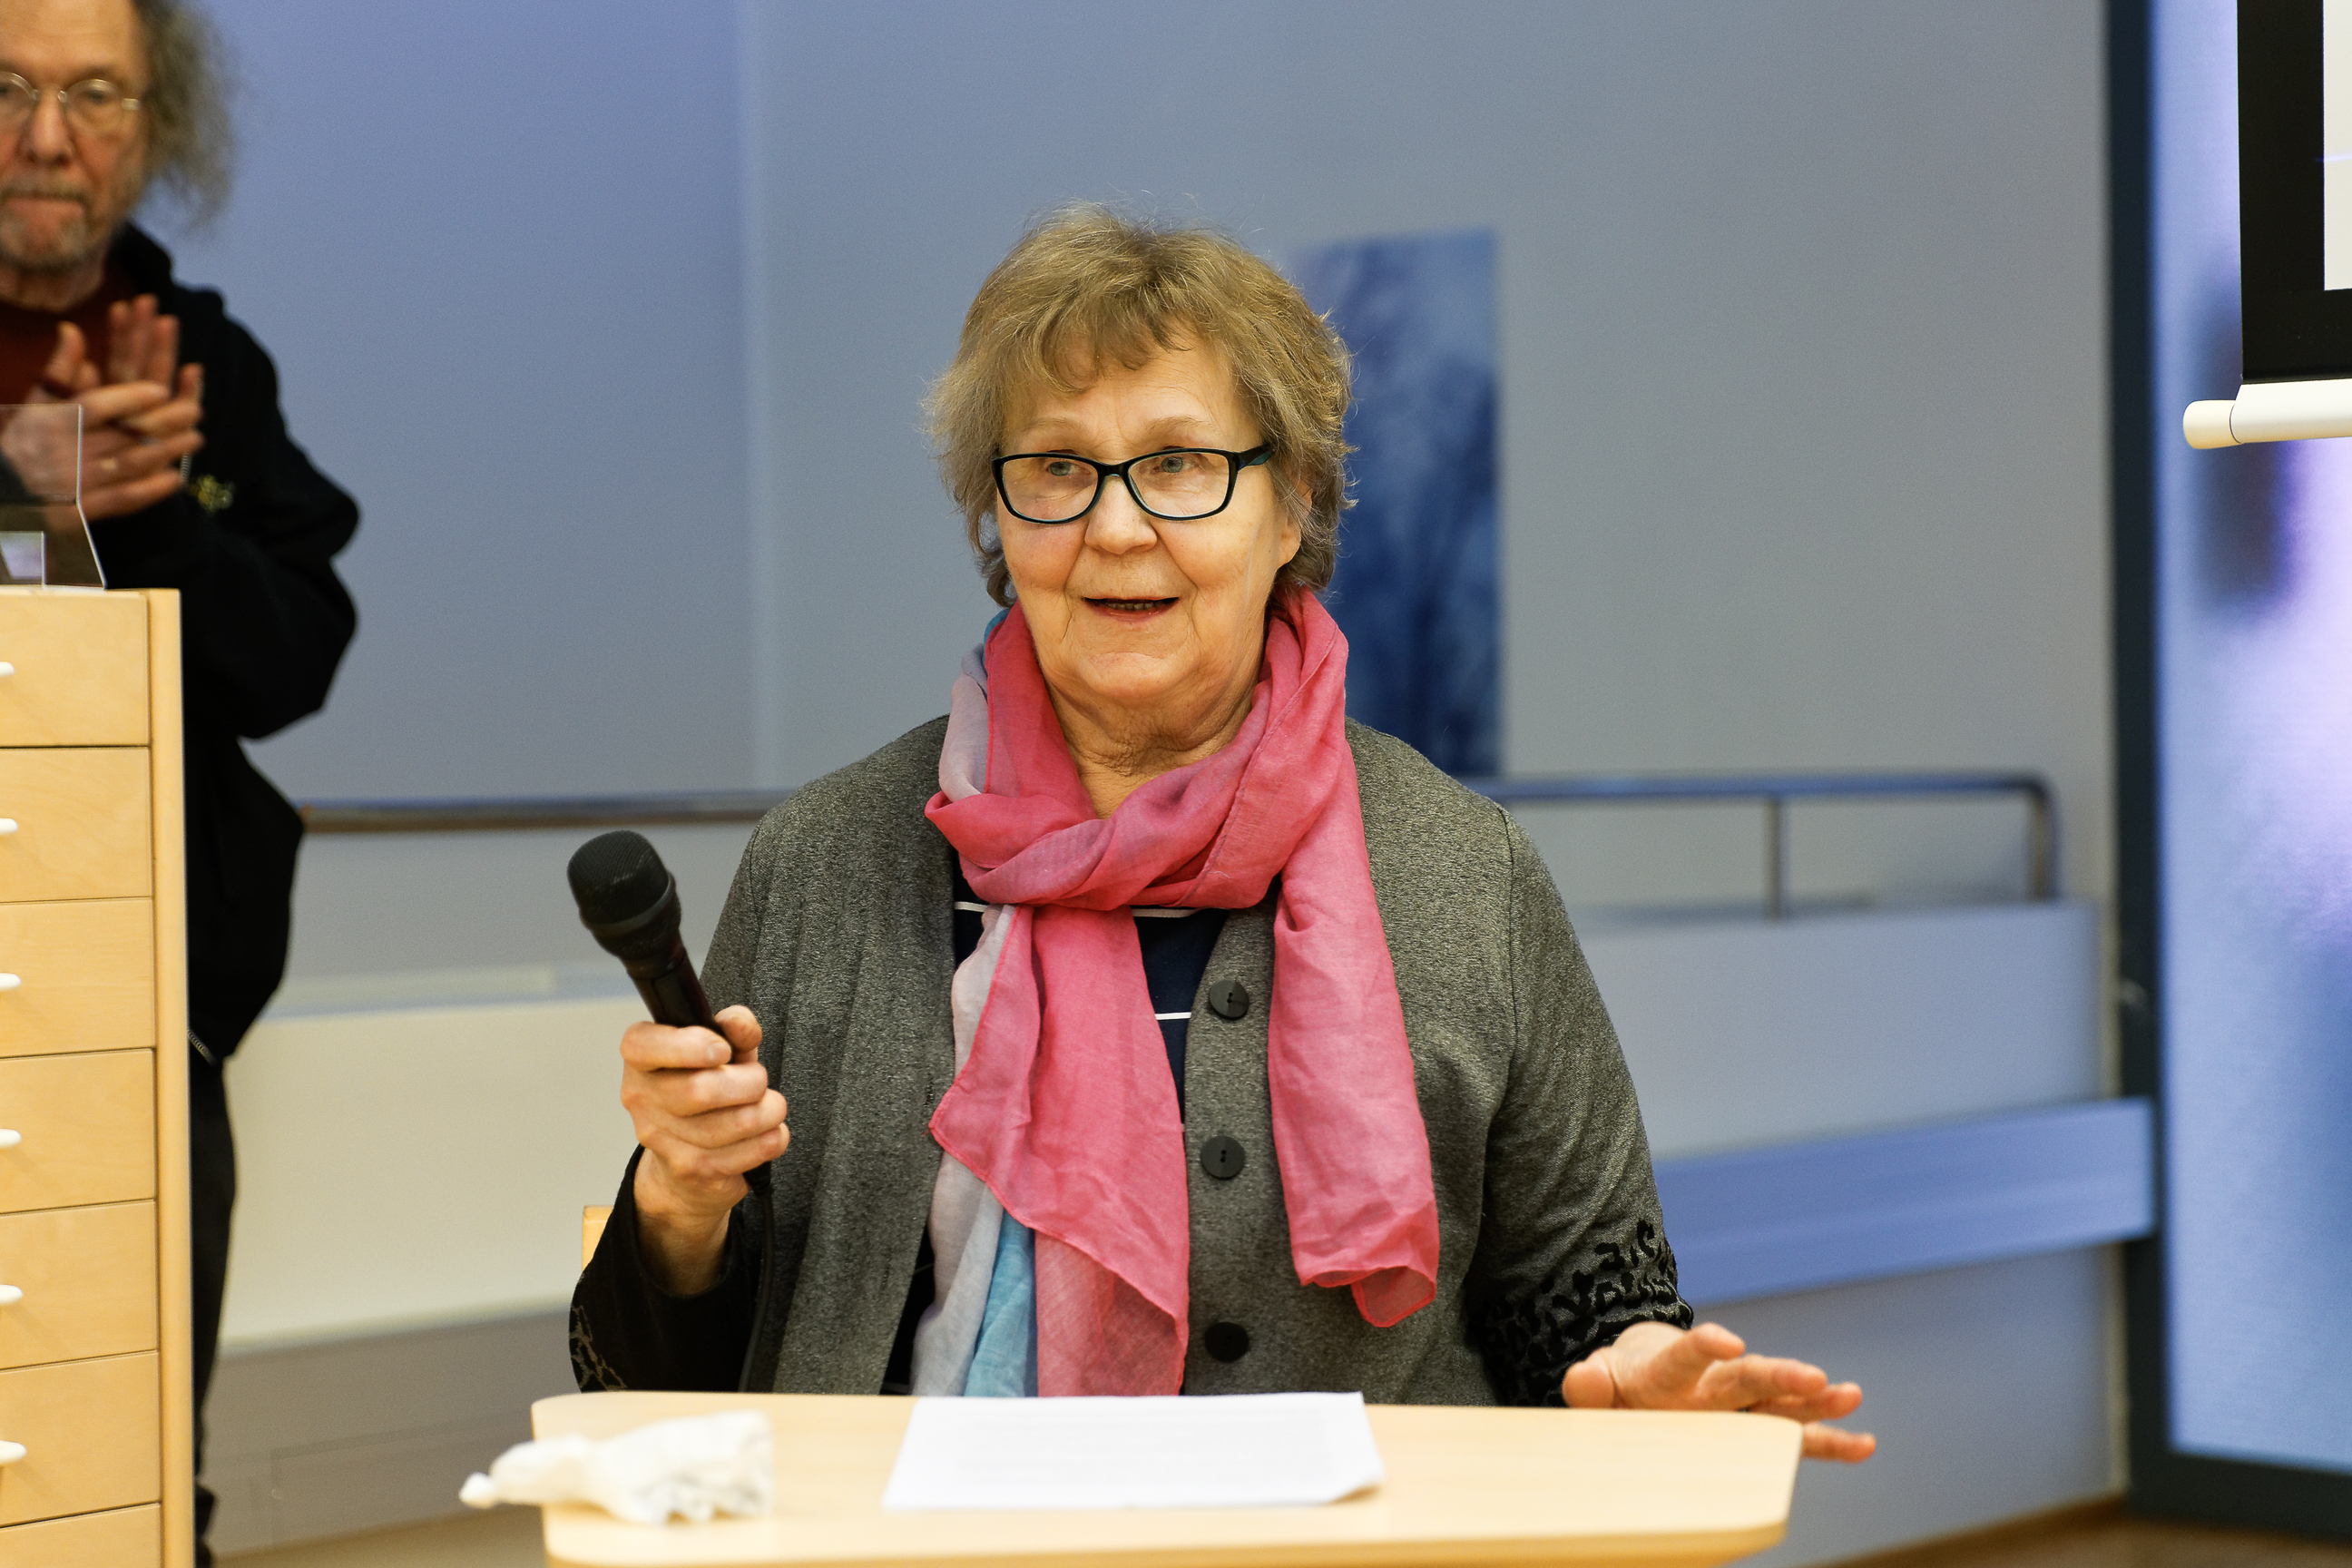  Anja Rusinen reading the winning text of the “Tarinoiden Ylä-Savo” writing competition.